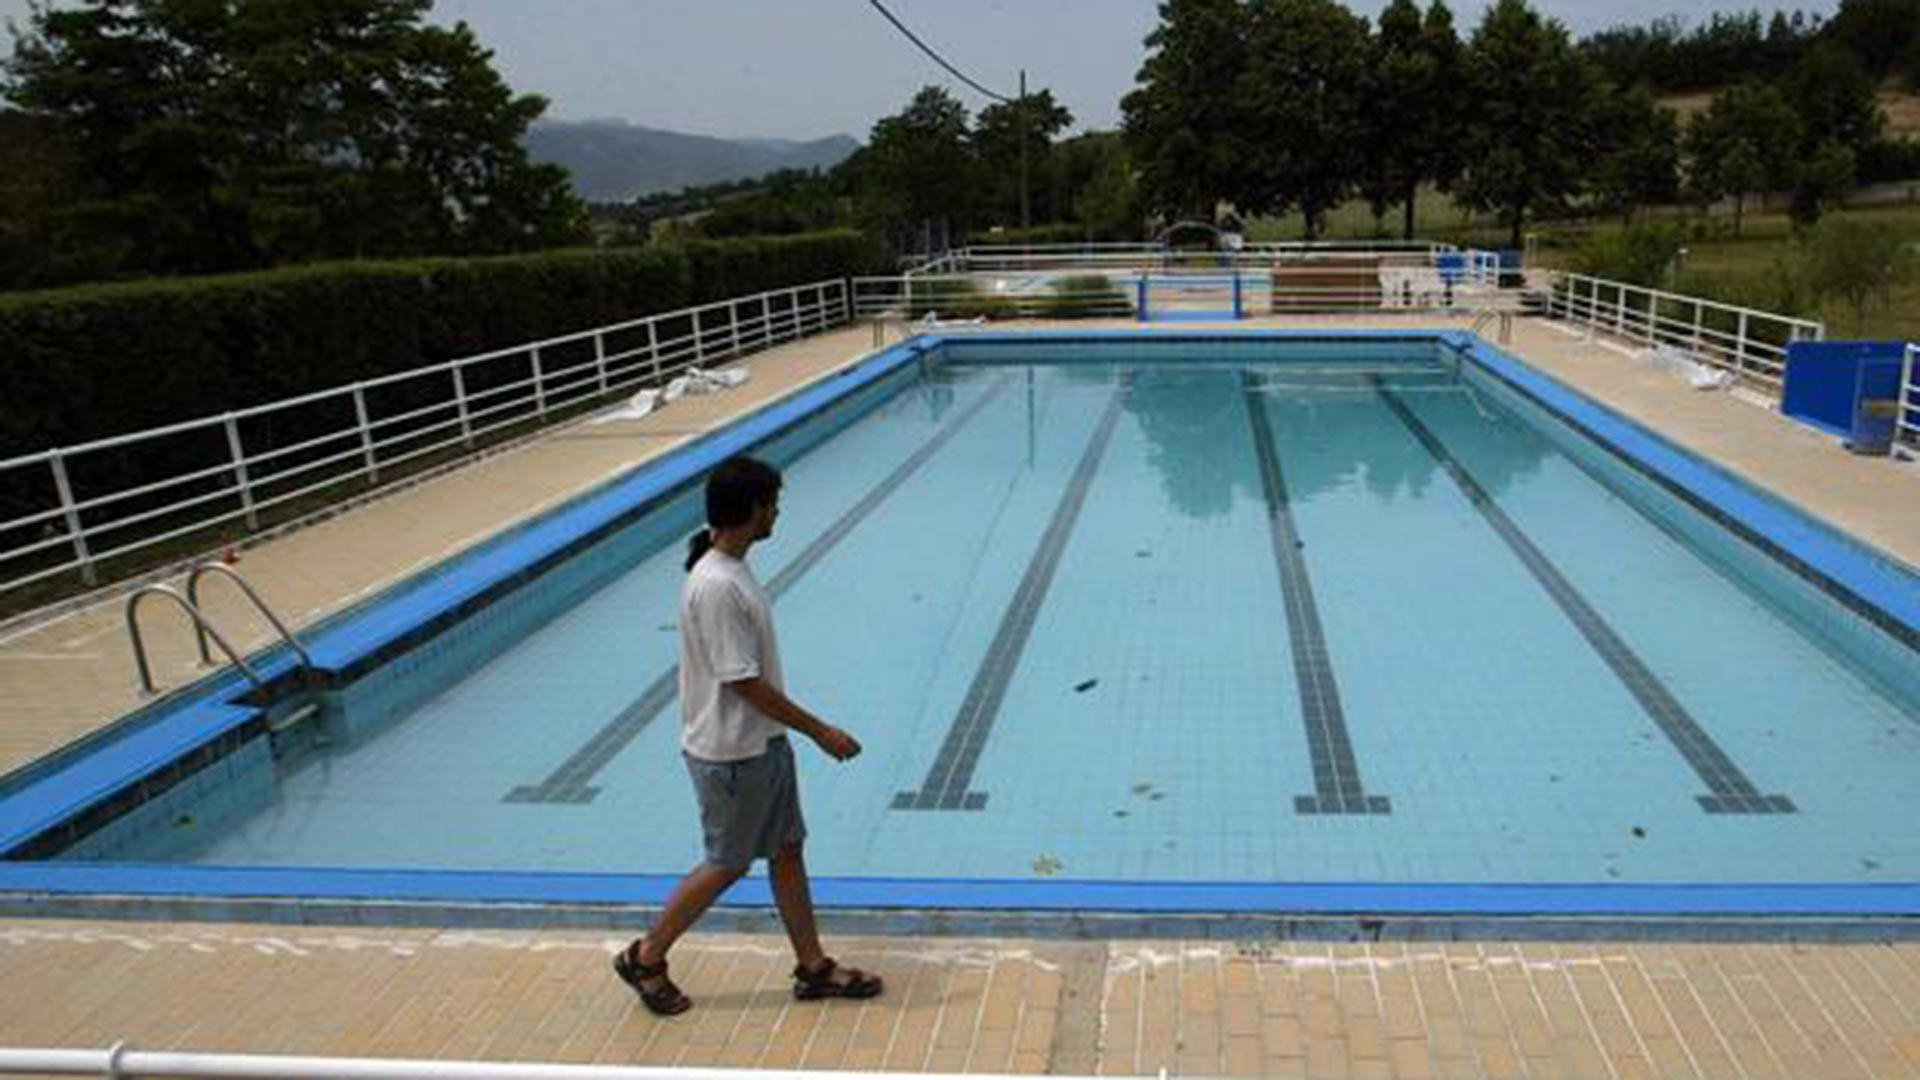 Expulsados 60 jóvenes de una piscina tras protestar por la exclusión de un menor transgénero